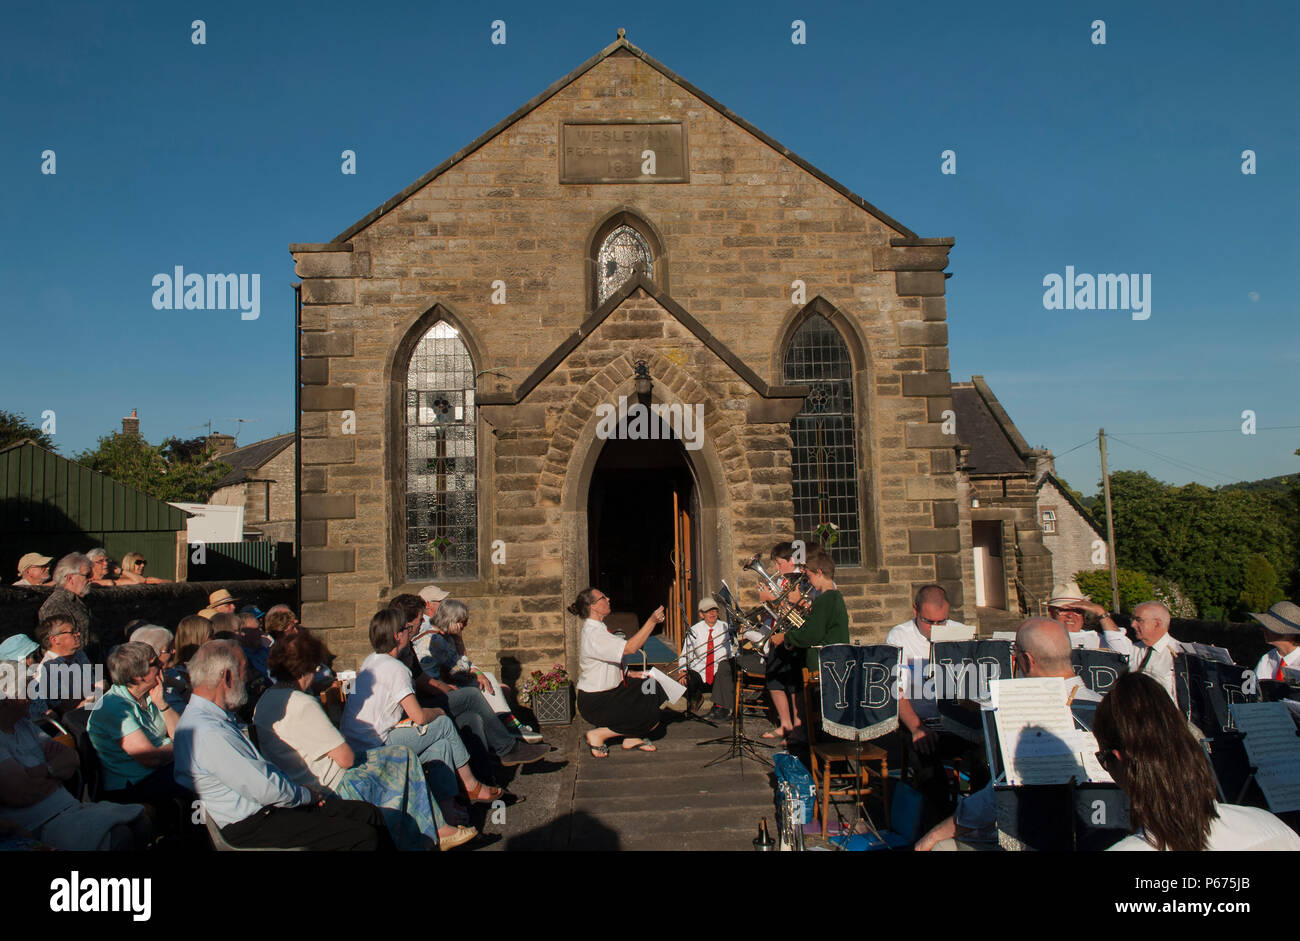 La band di villaggio di Youlgreave Derbyshire suona fuori dalla Chapel Inghilterra 2018 2010s UK HOMER SYKES Foto Stock